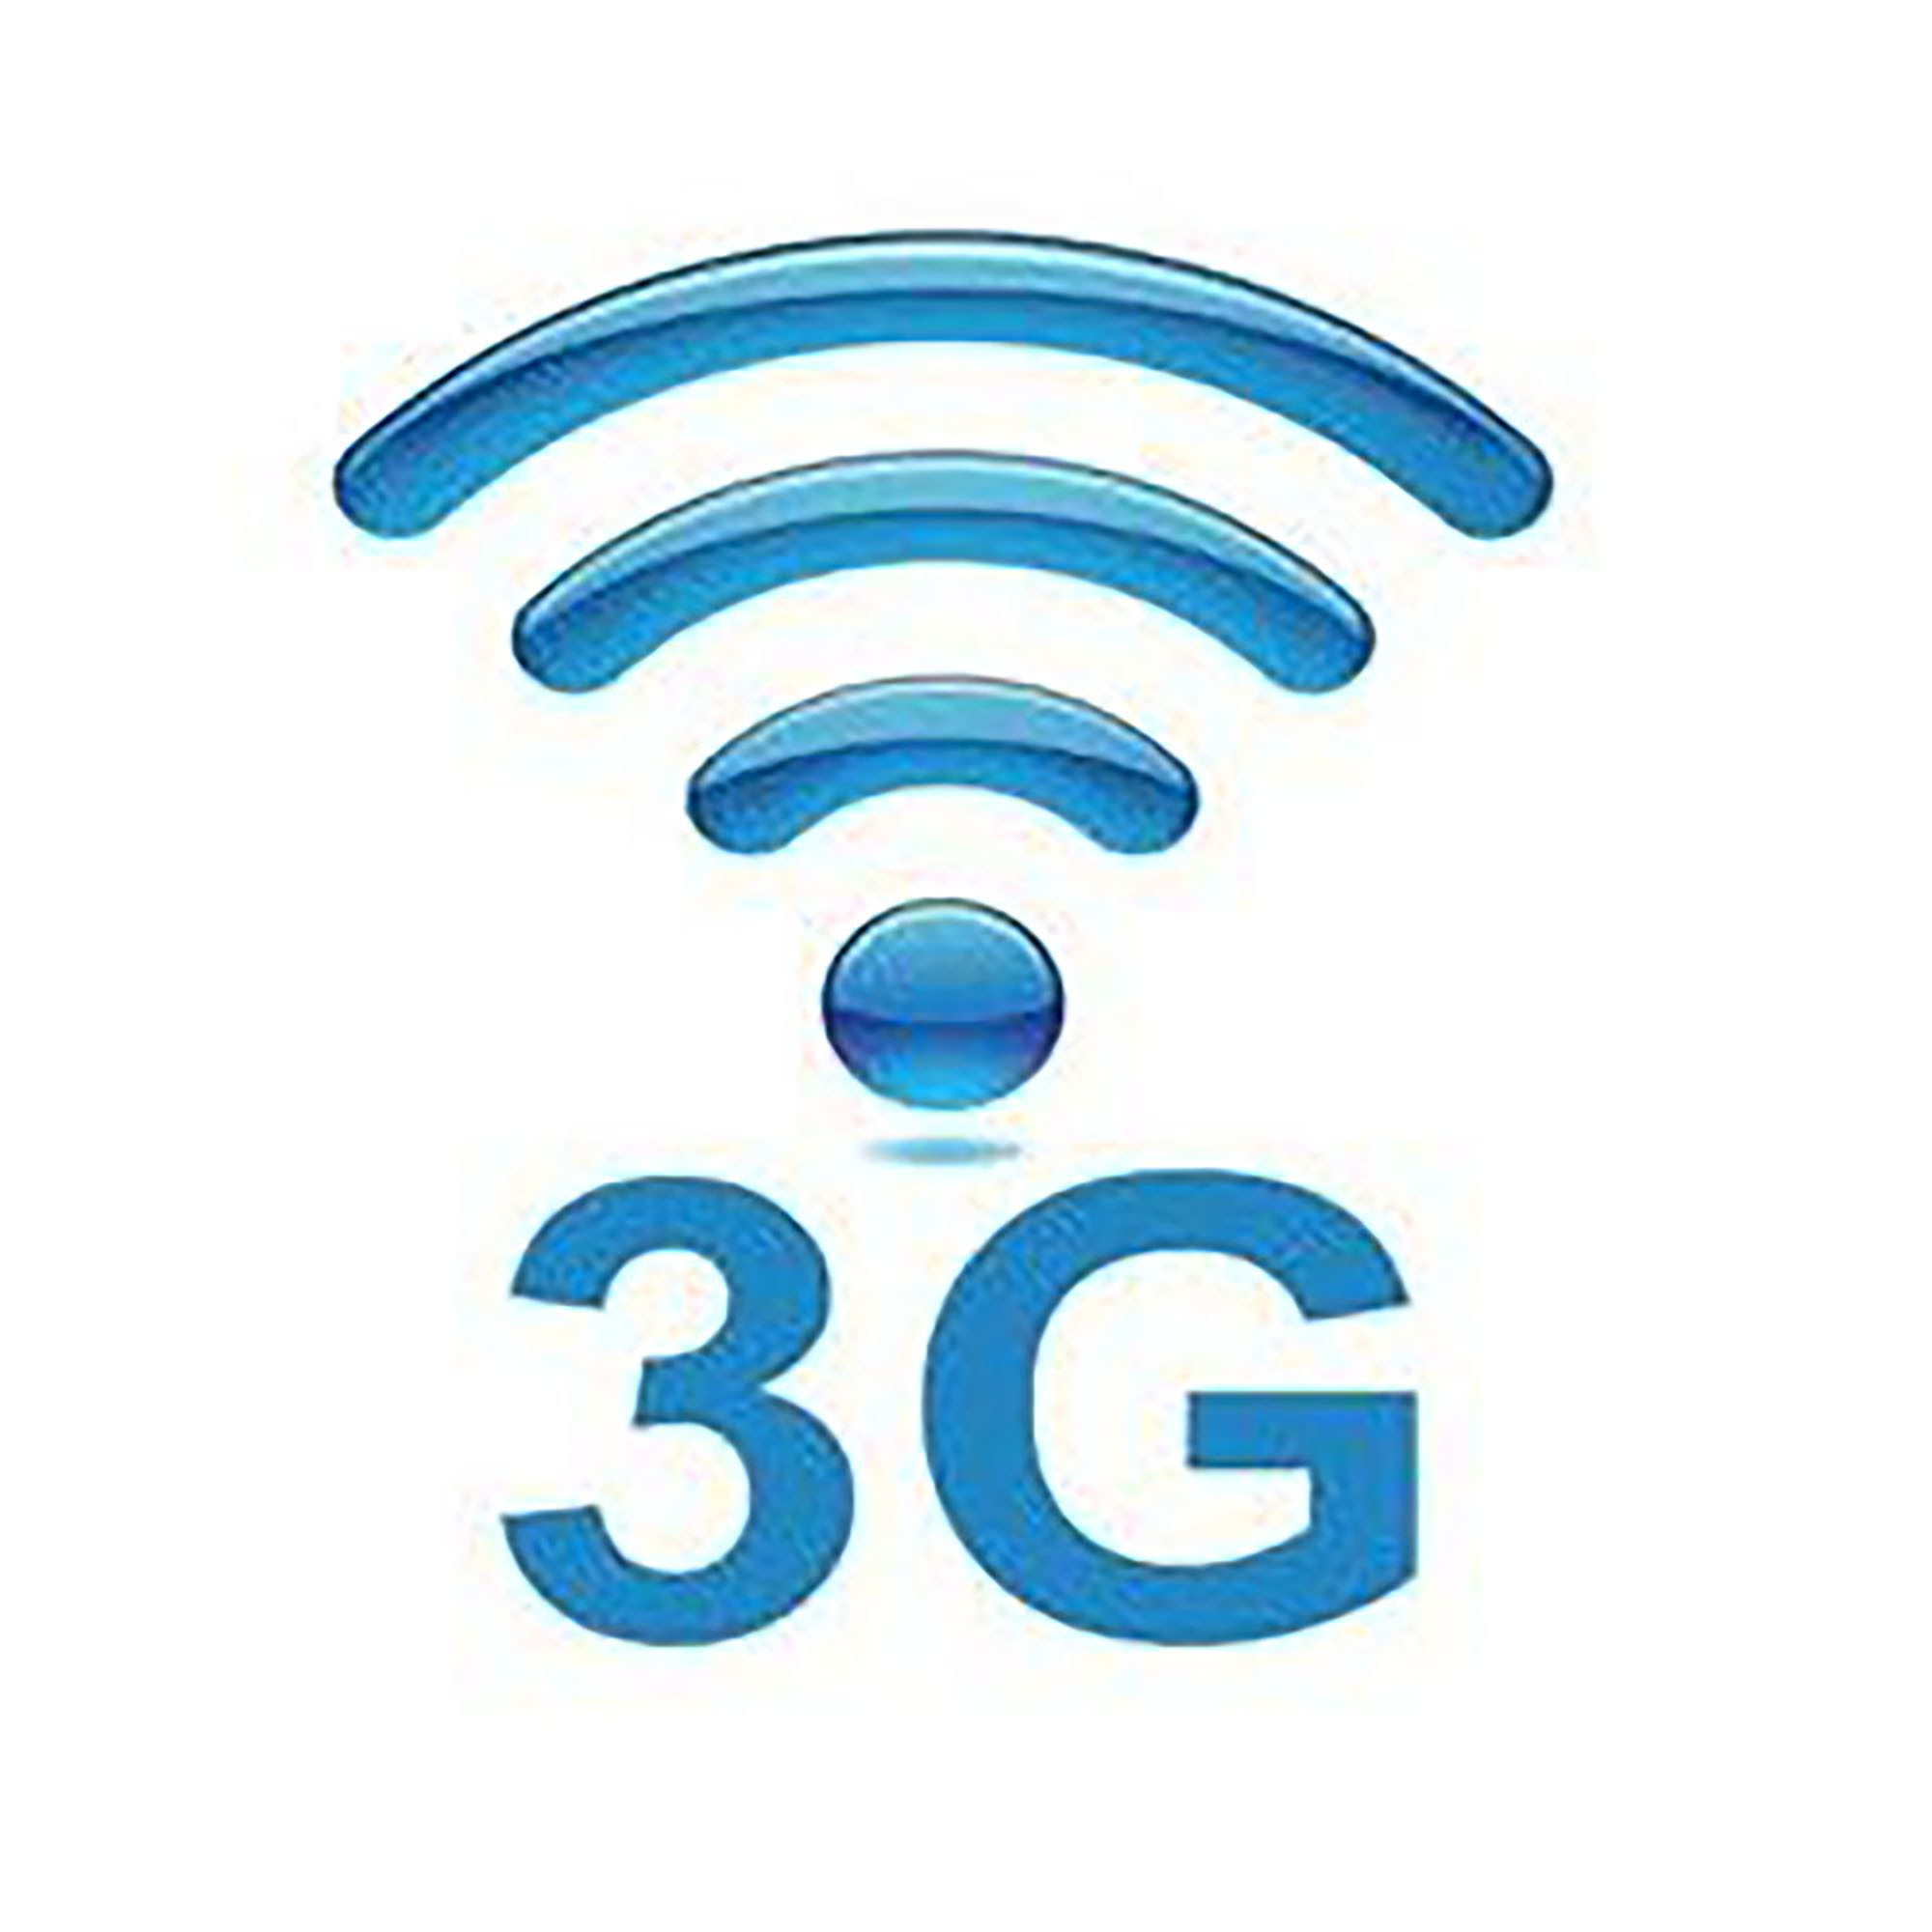 3 ж связь. Значок 3g. 3g интернет. 3g мобильный интернет. 3g связь.